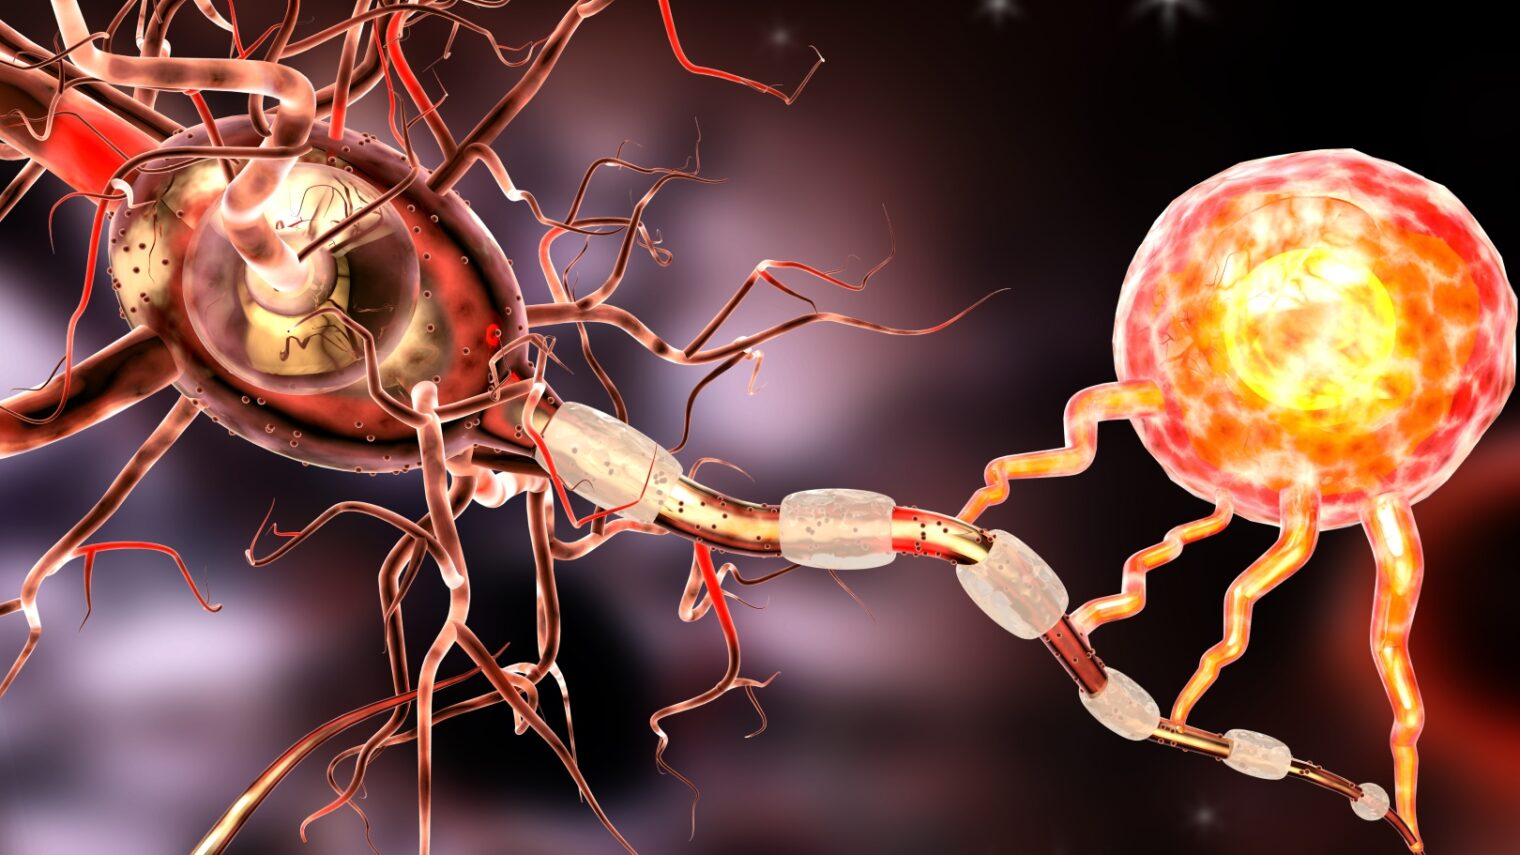 3D illustration of nerve cells via Shutterstock.com